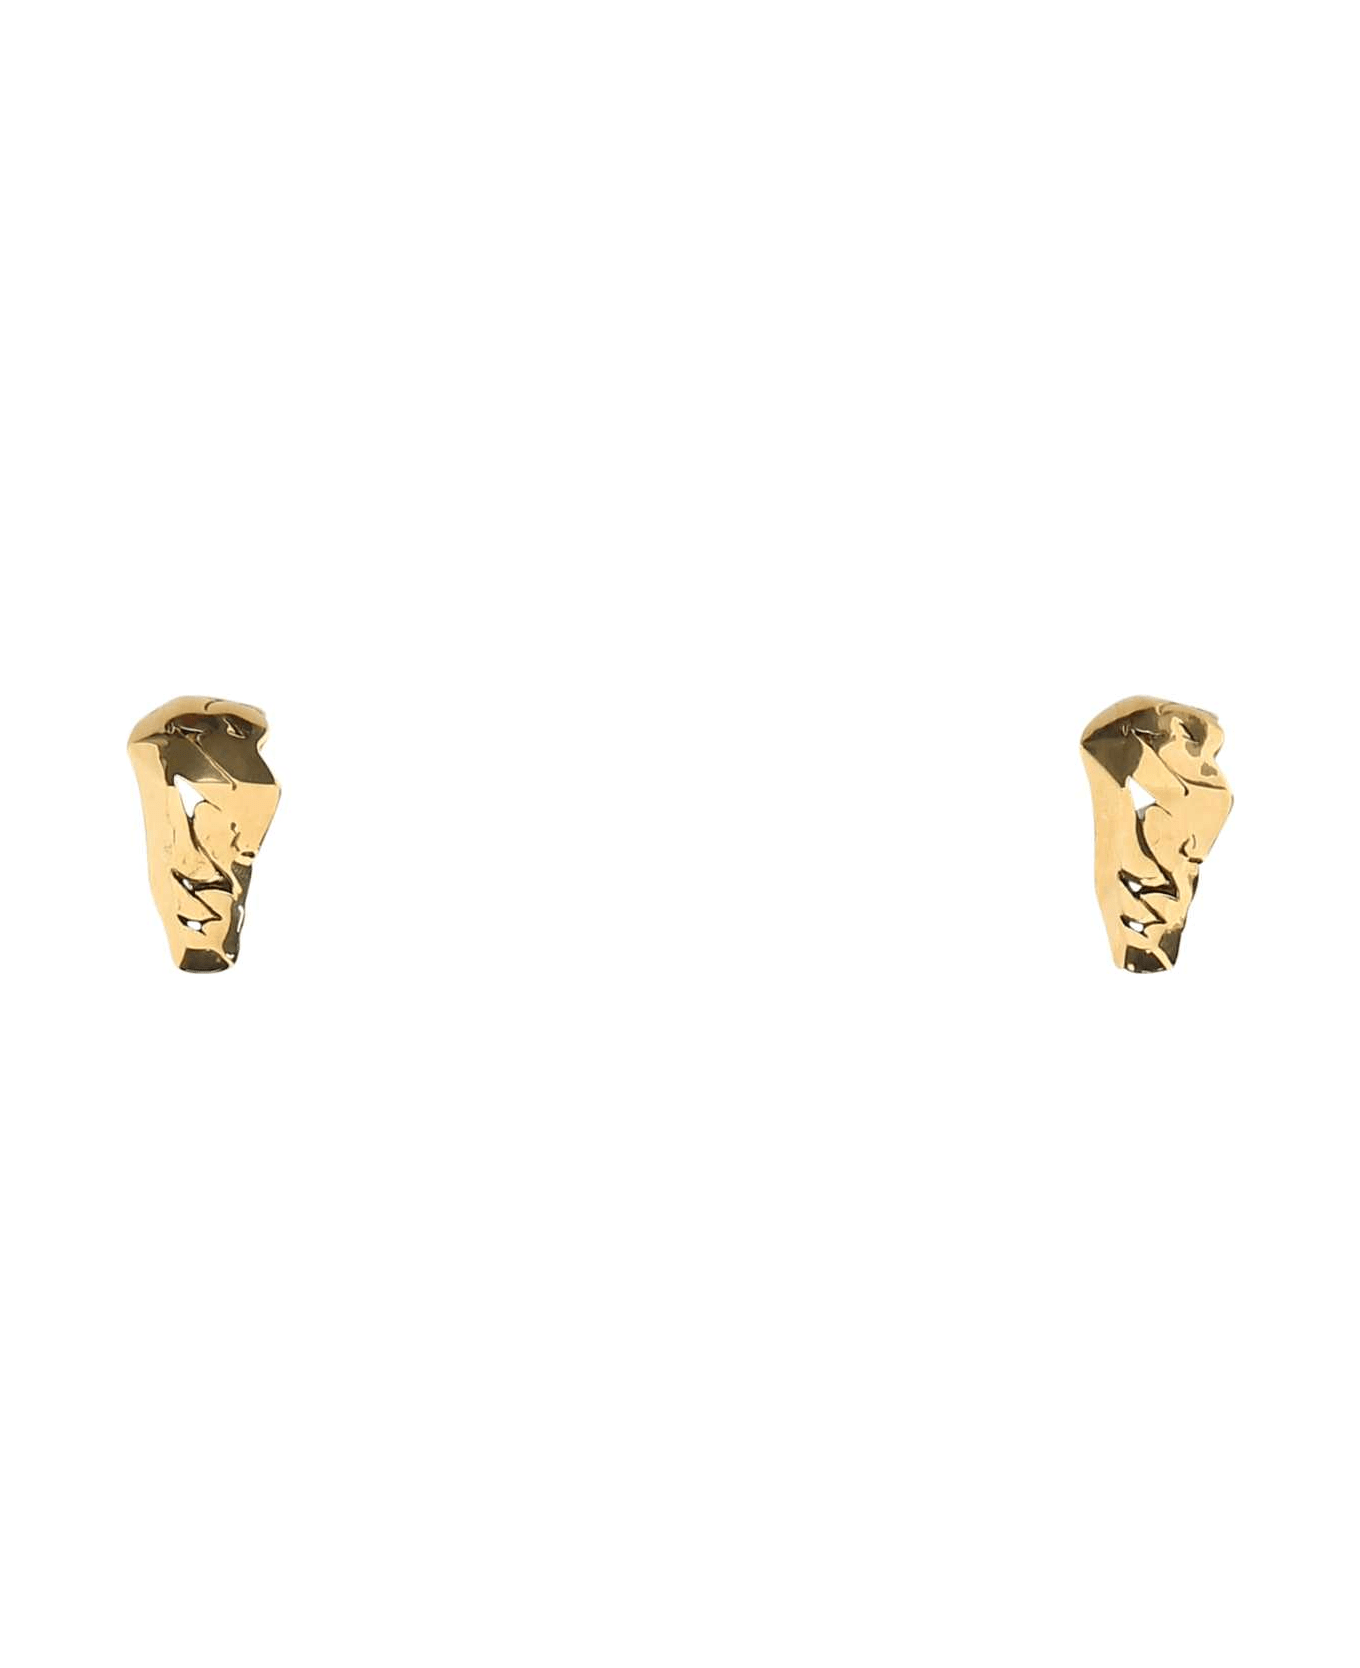 Alexander McQueen Gold Metal Earrings - 0448 イヤリング